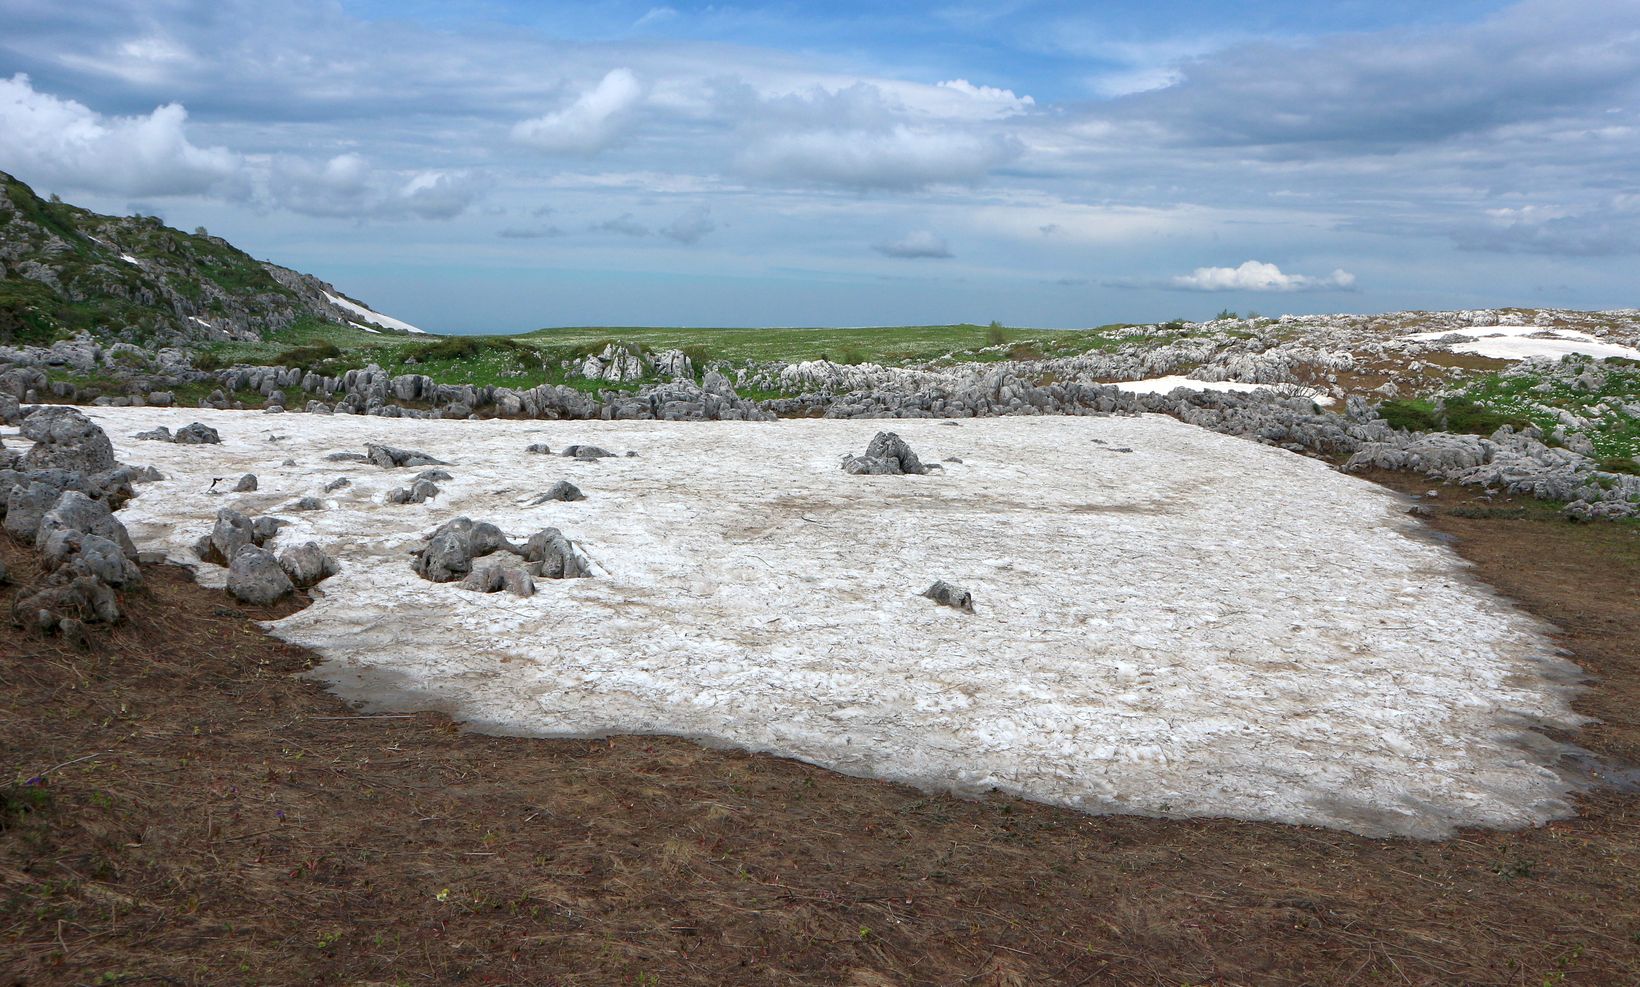 Каменное Море, image of landscape/habitat.